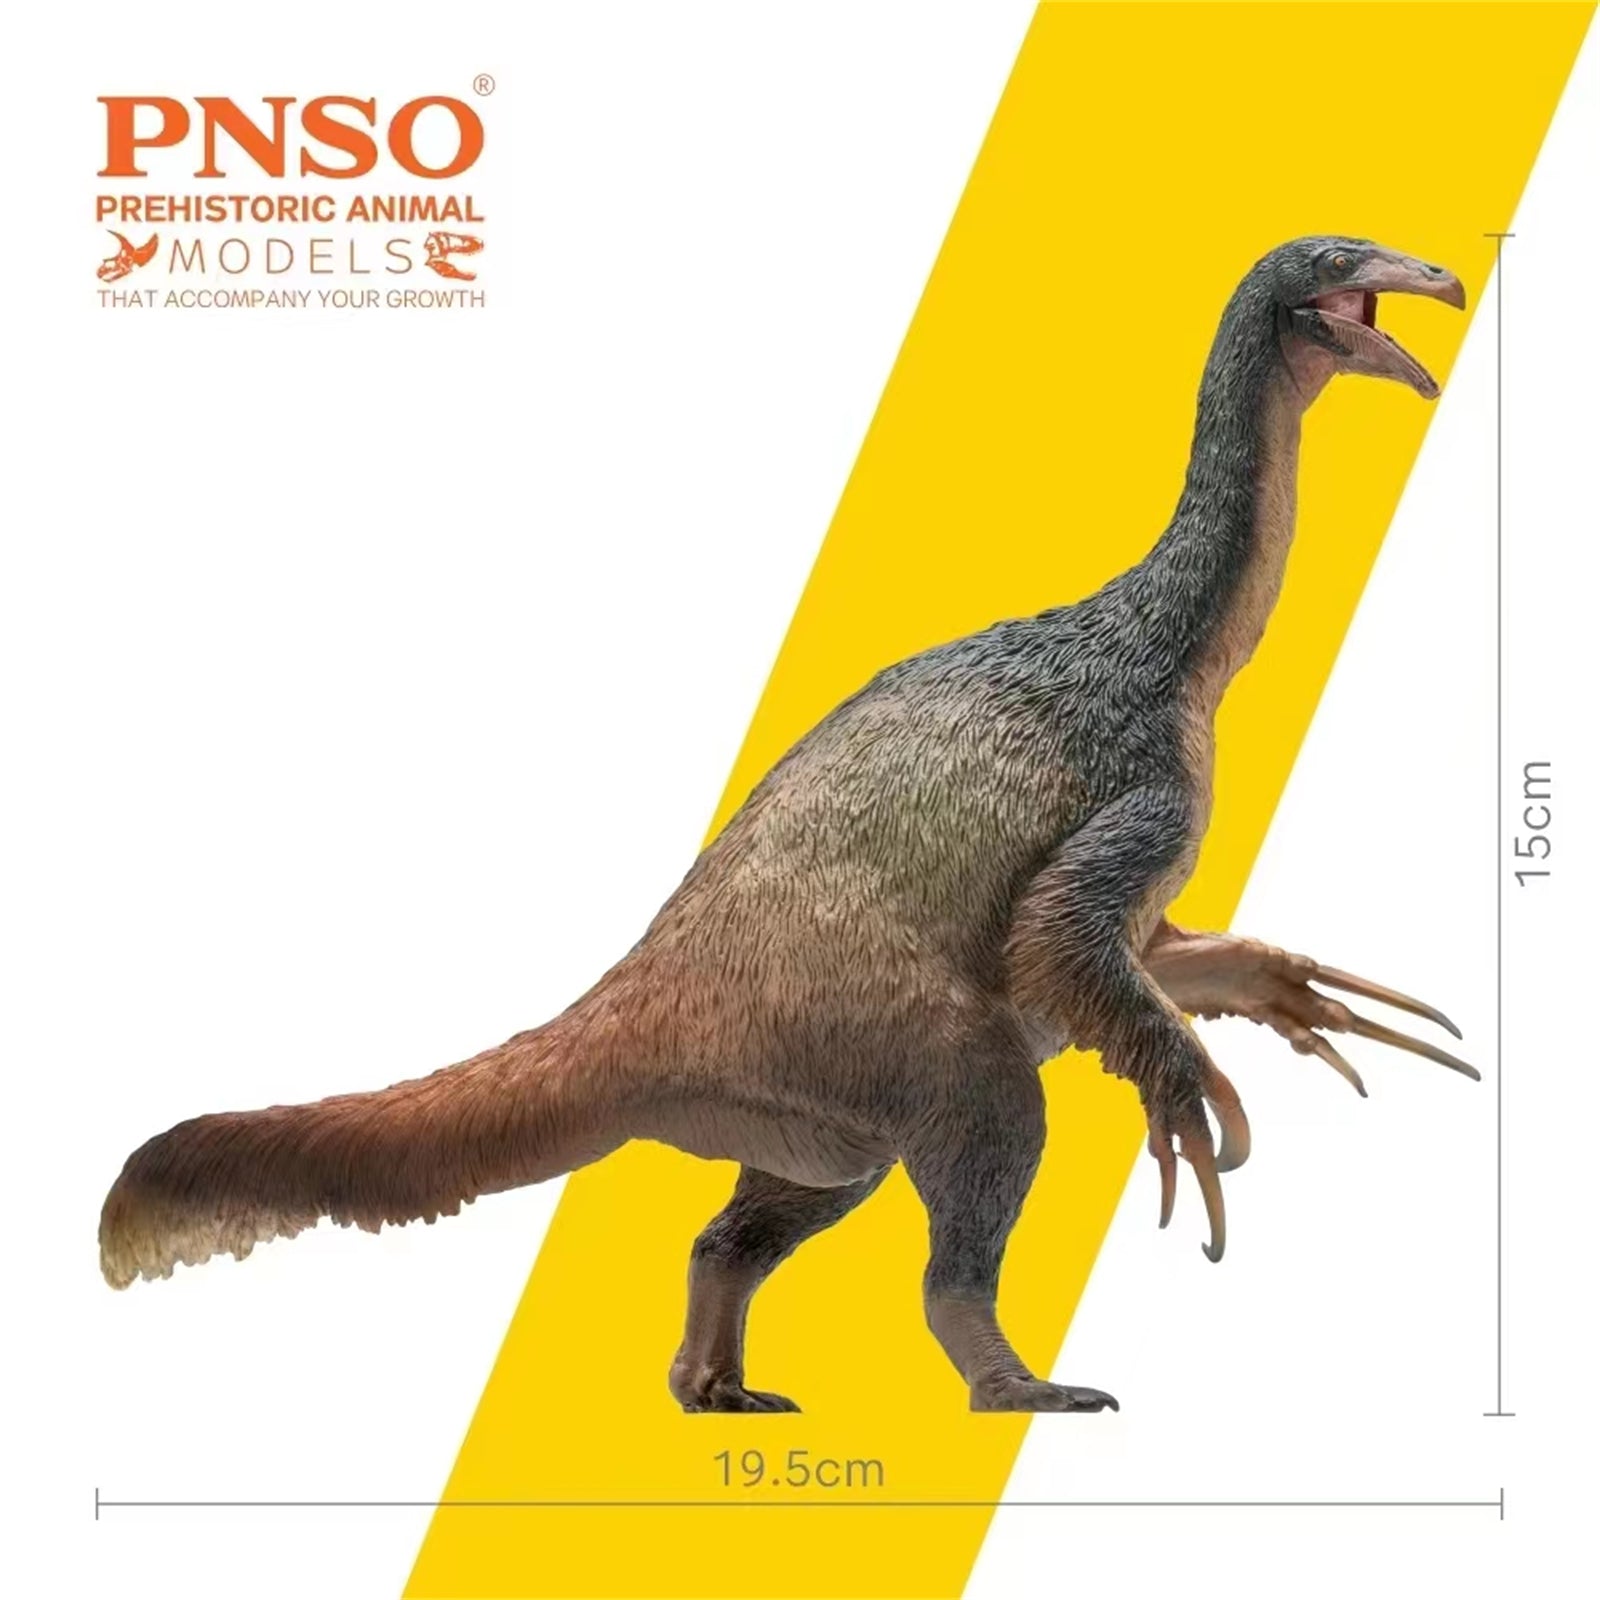 Deinocheirus by PNSO